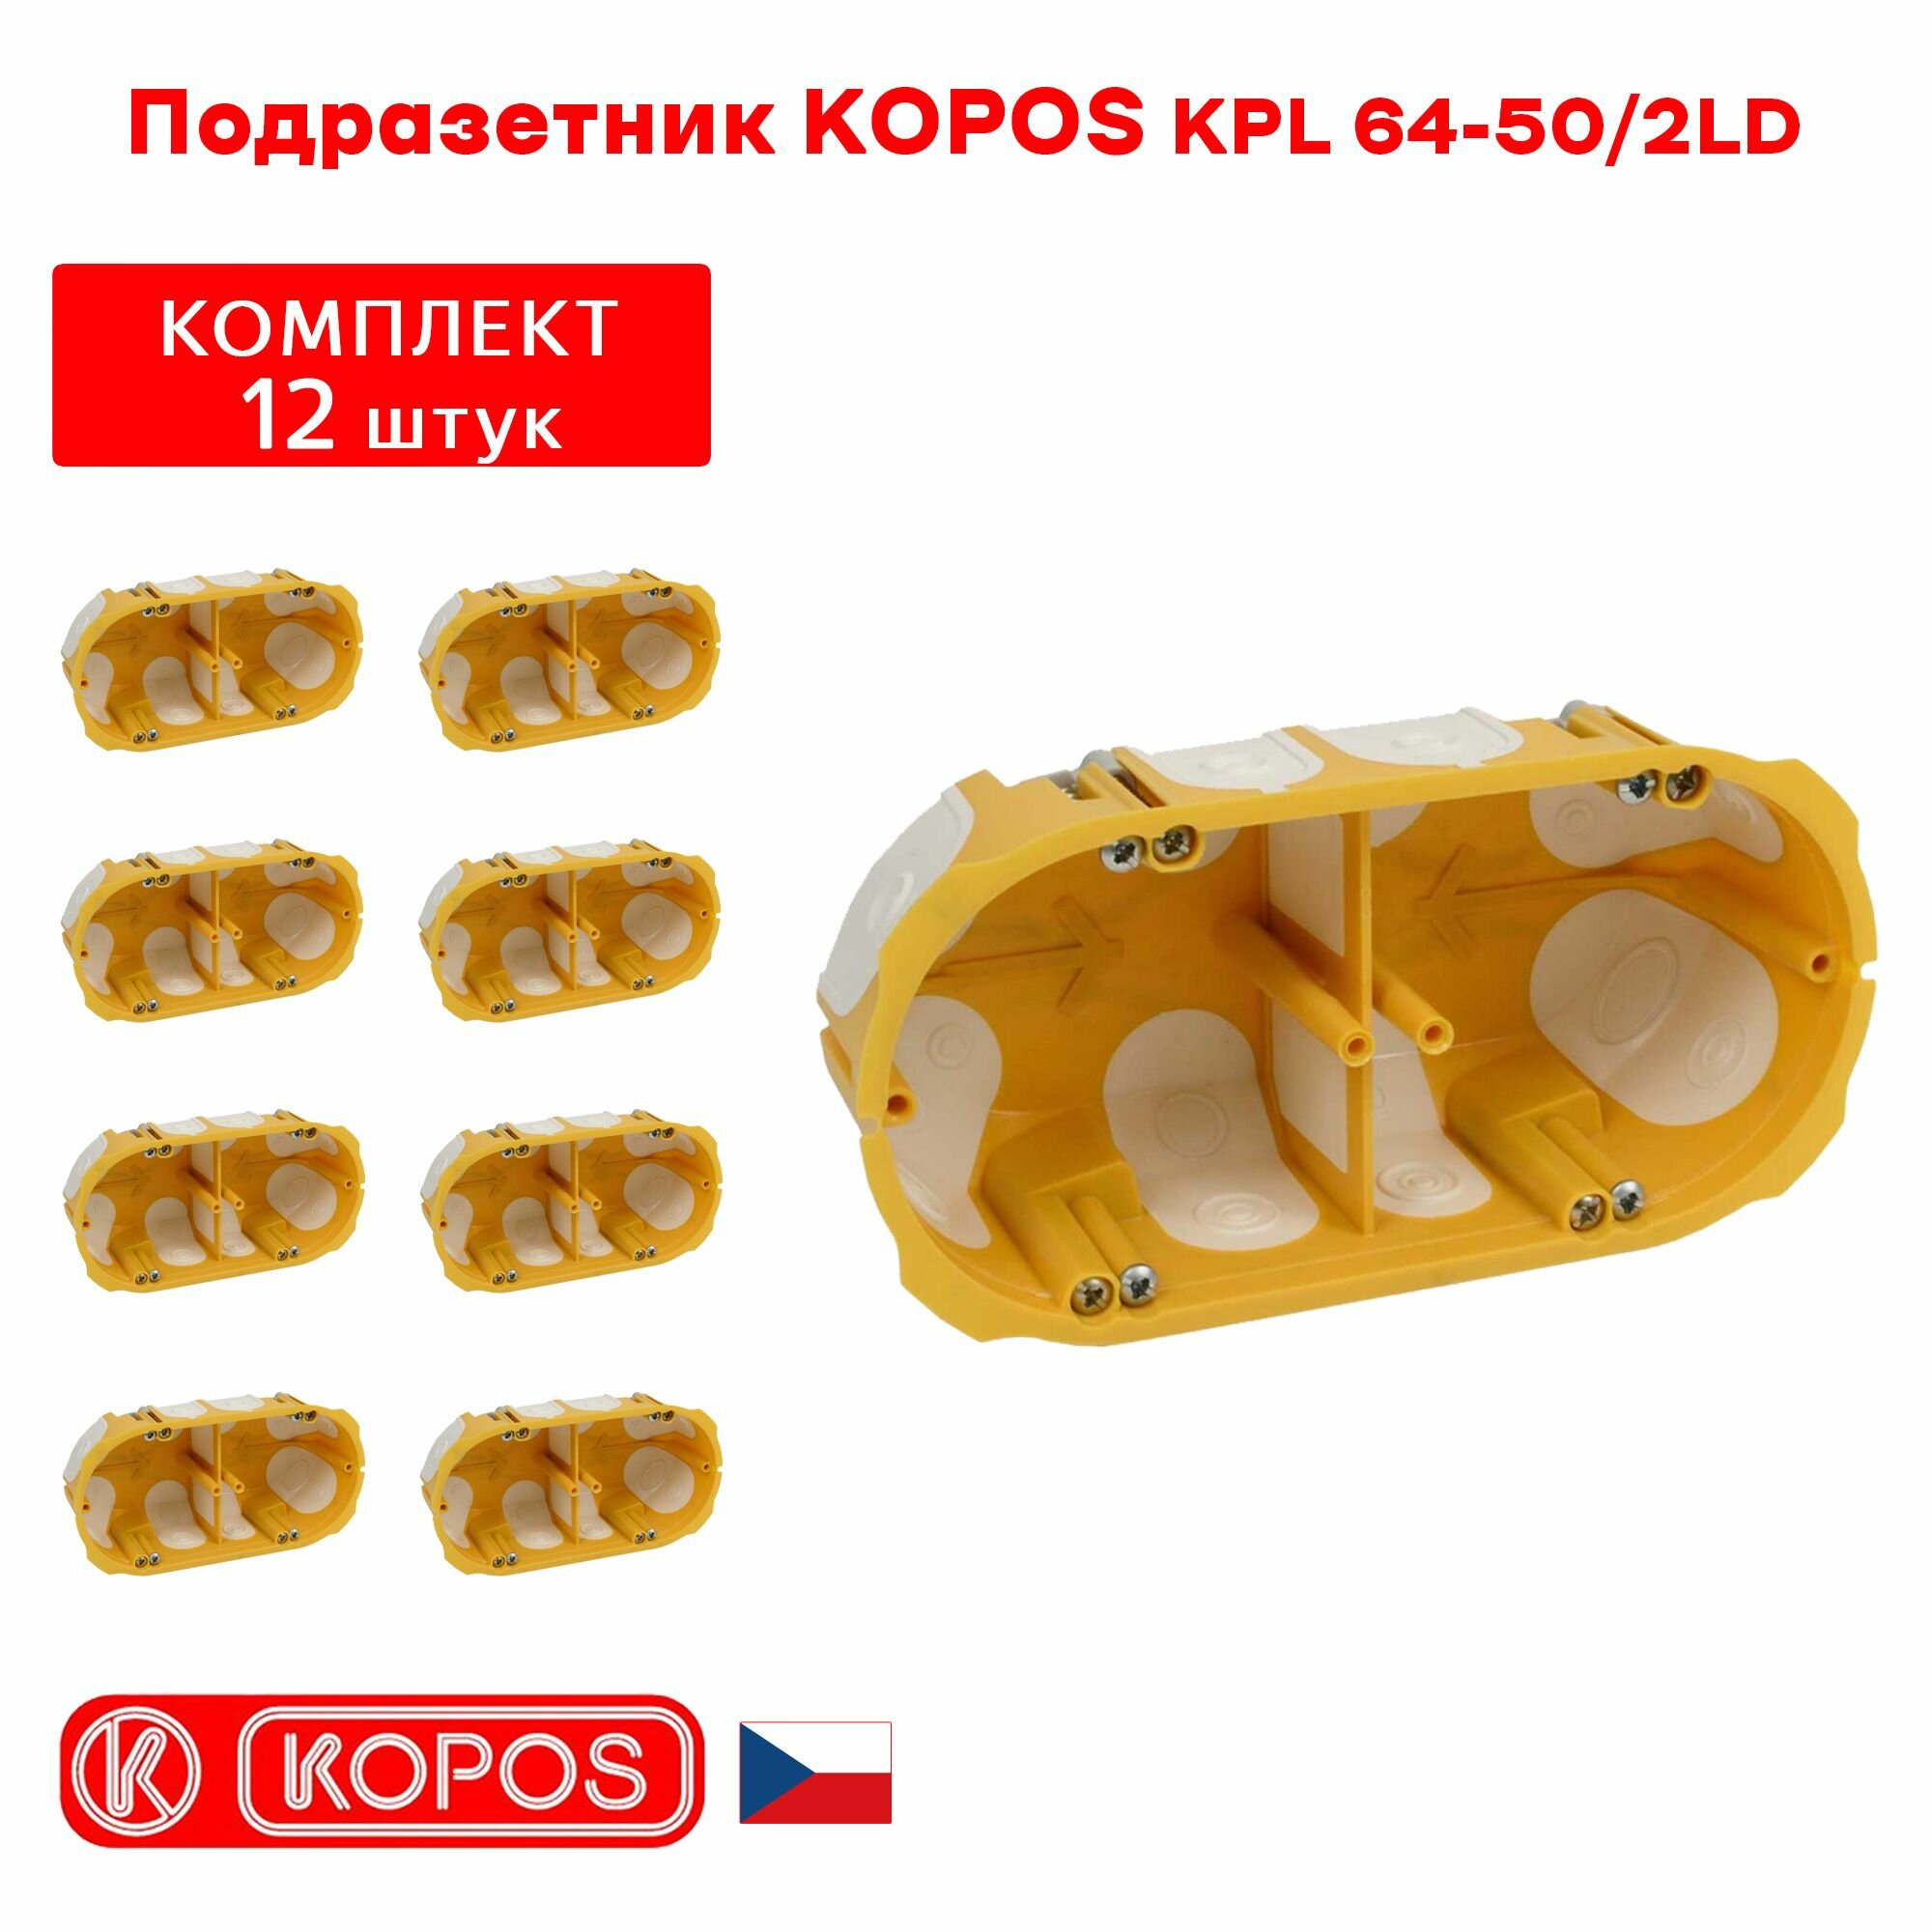 Подрозетник двухместный KOPOS KPL 64-50/2LD герметичный для пустотелых, гипсокартонных и деревянных стен комплект: 12штук